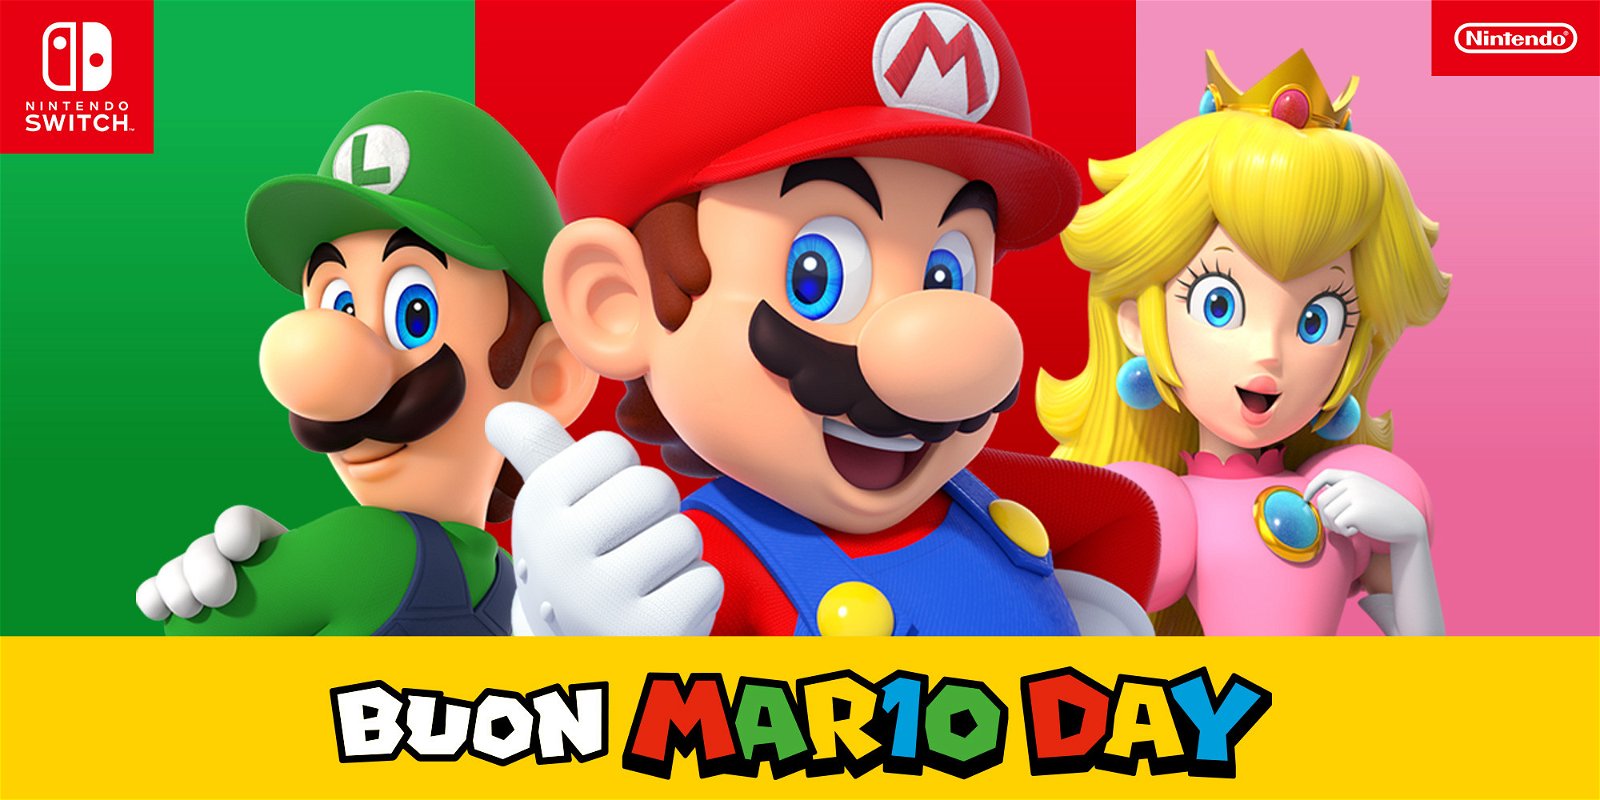 Tutte le novità annunciate da Nintendo durante il MAR10 Day